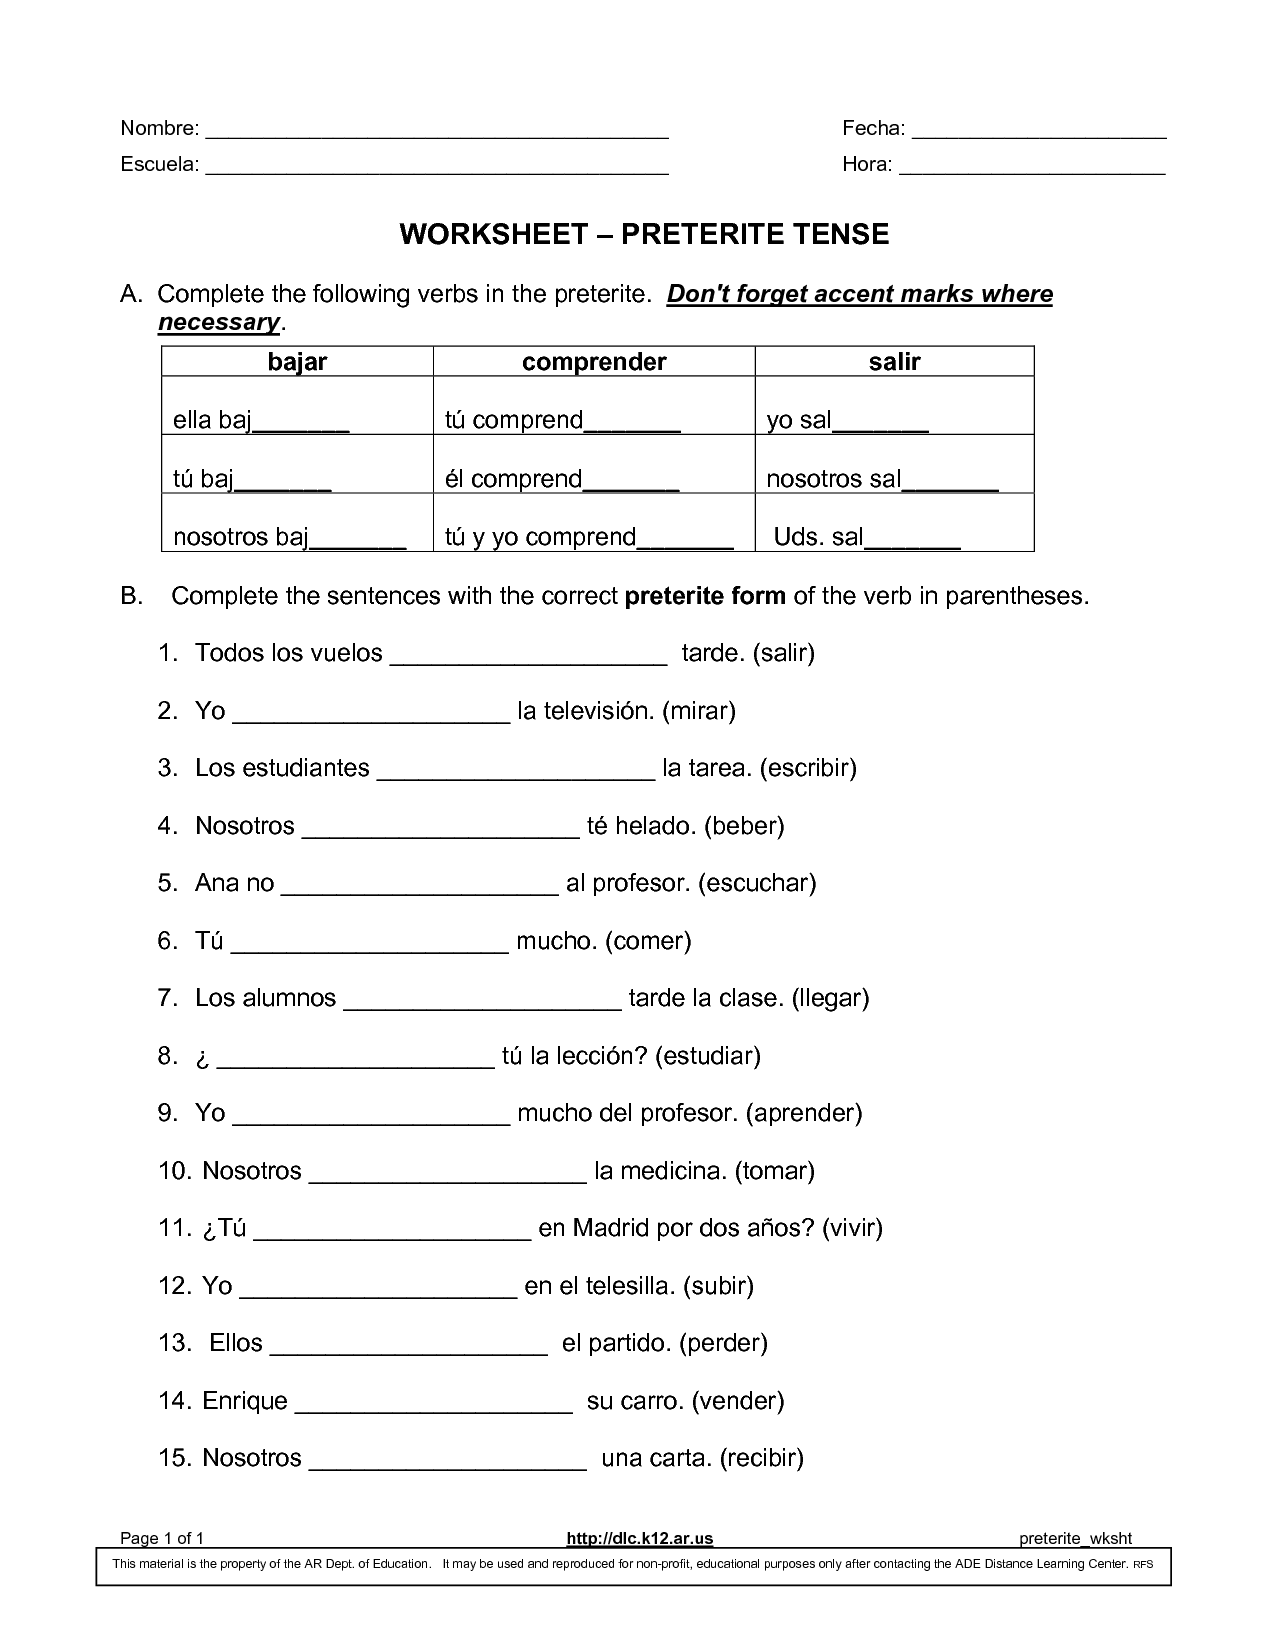 practice-with-preterite-verbs-car-gar-zar-worksheet-answers-verbs-worksheet